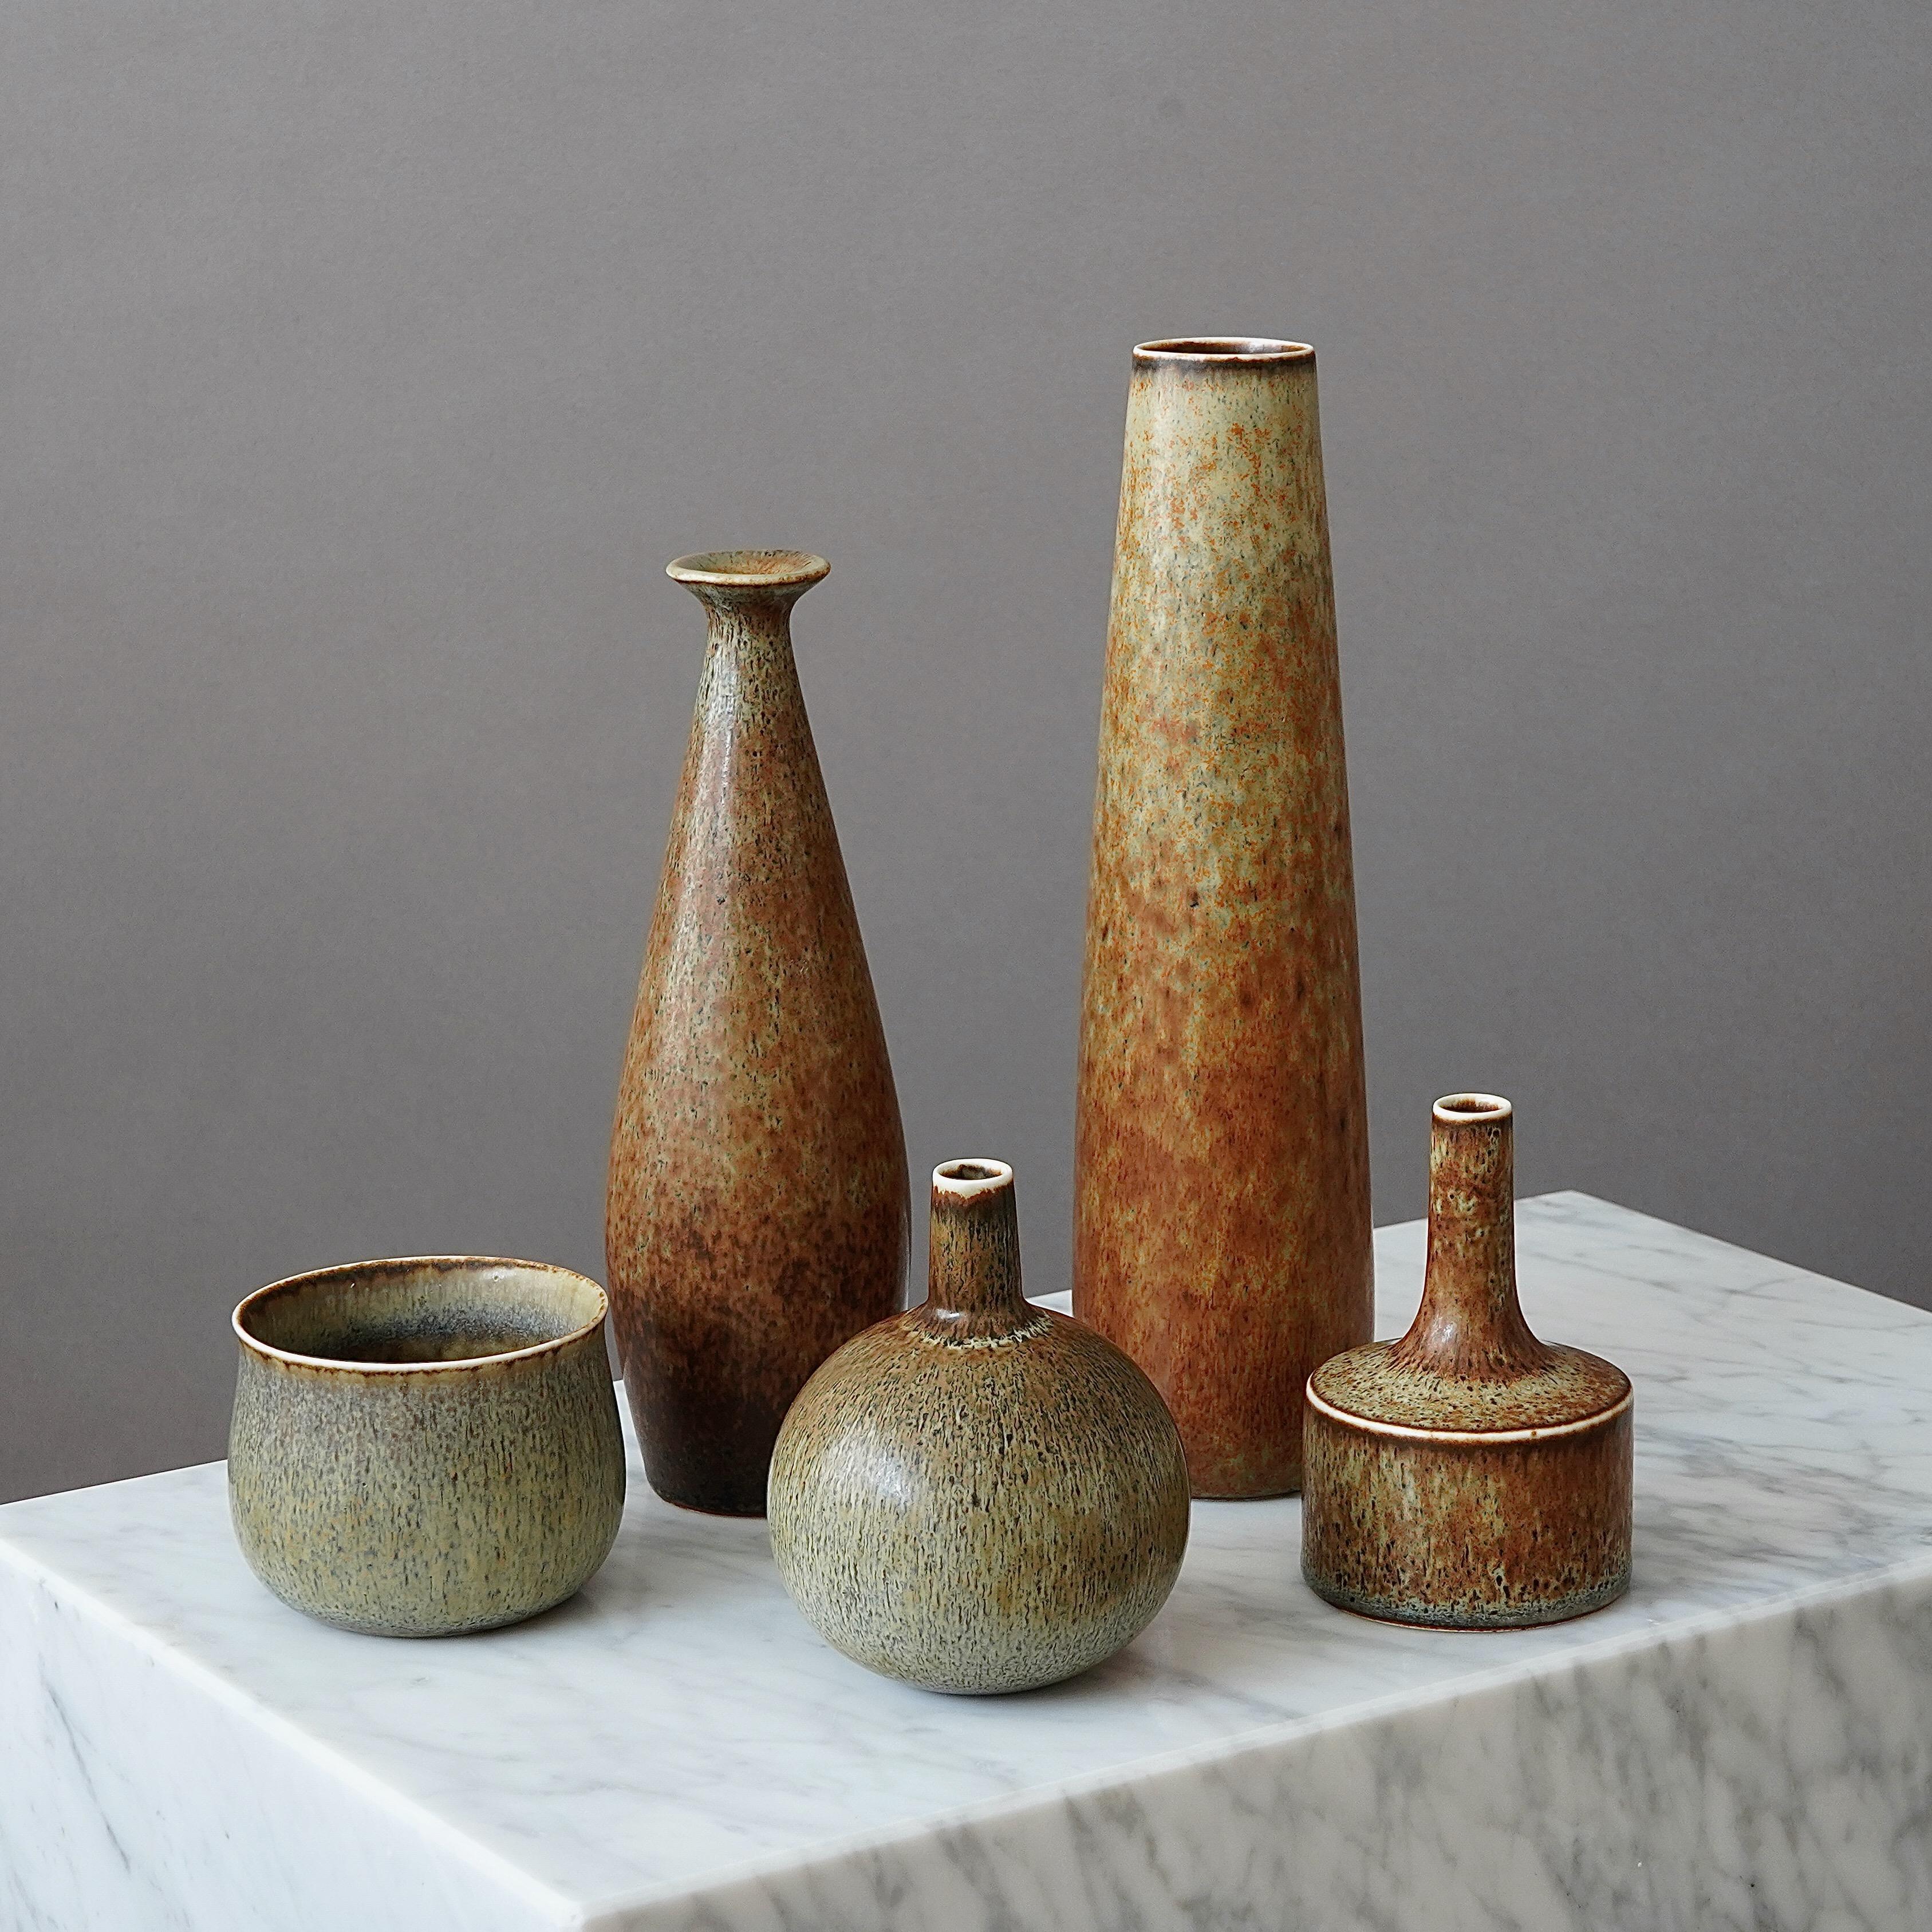 Ensemble de 5 beaux vases en grès avec une glaçure étonnante.
Conçu par Carl-Harry Stålhane à Rörstrand, Suède, années 1950.

Excellent état. Signé 